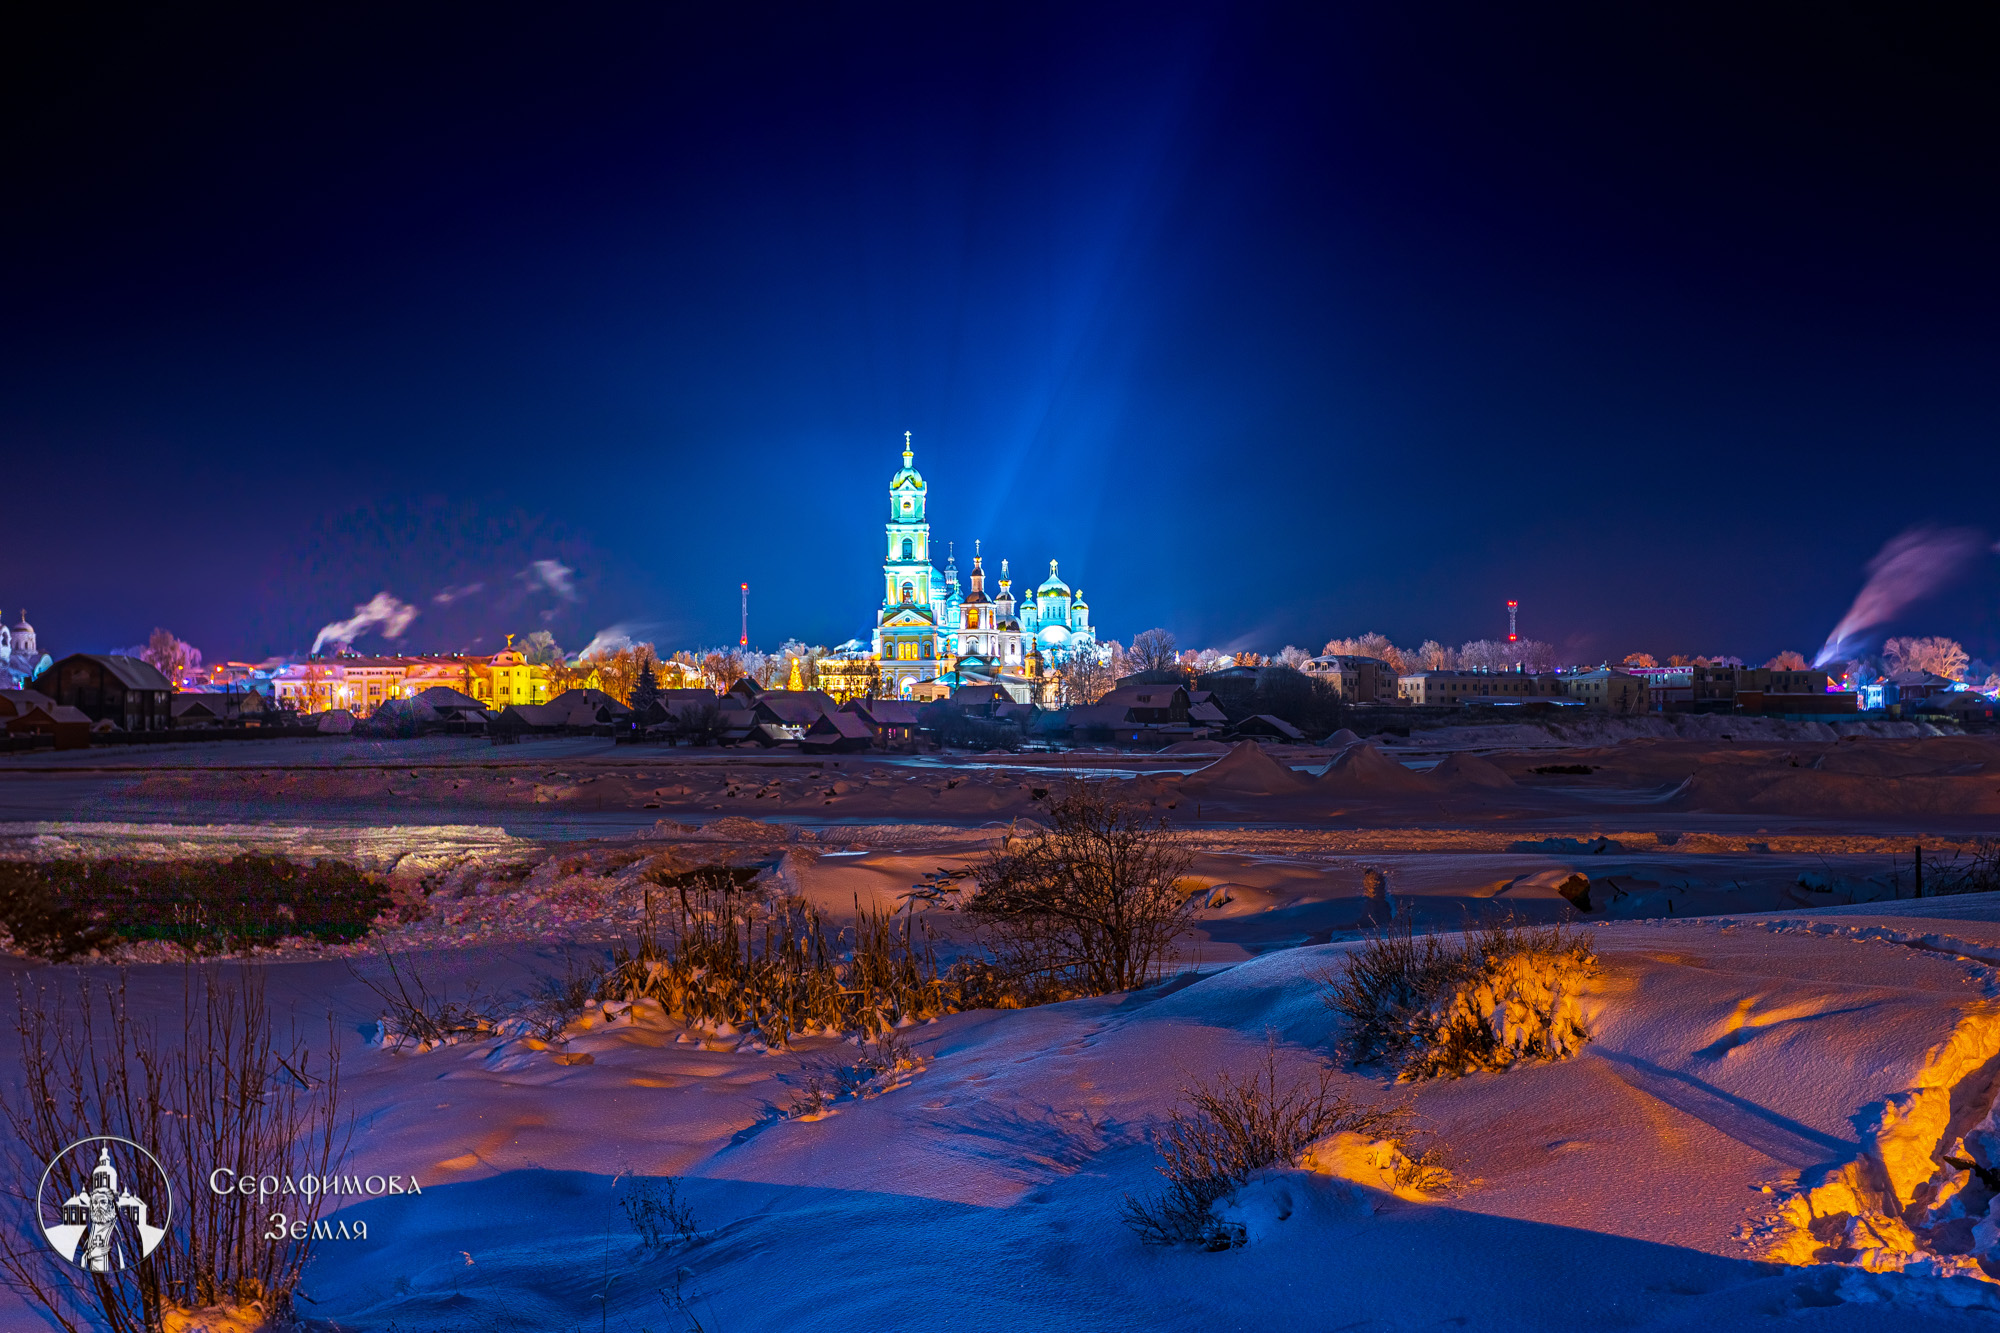 Дивеево вошло в число самых популярных деревень России для отдыха в 2021 году